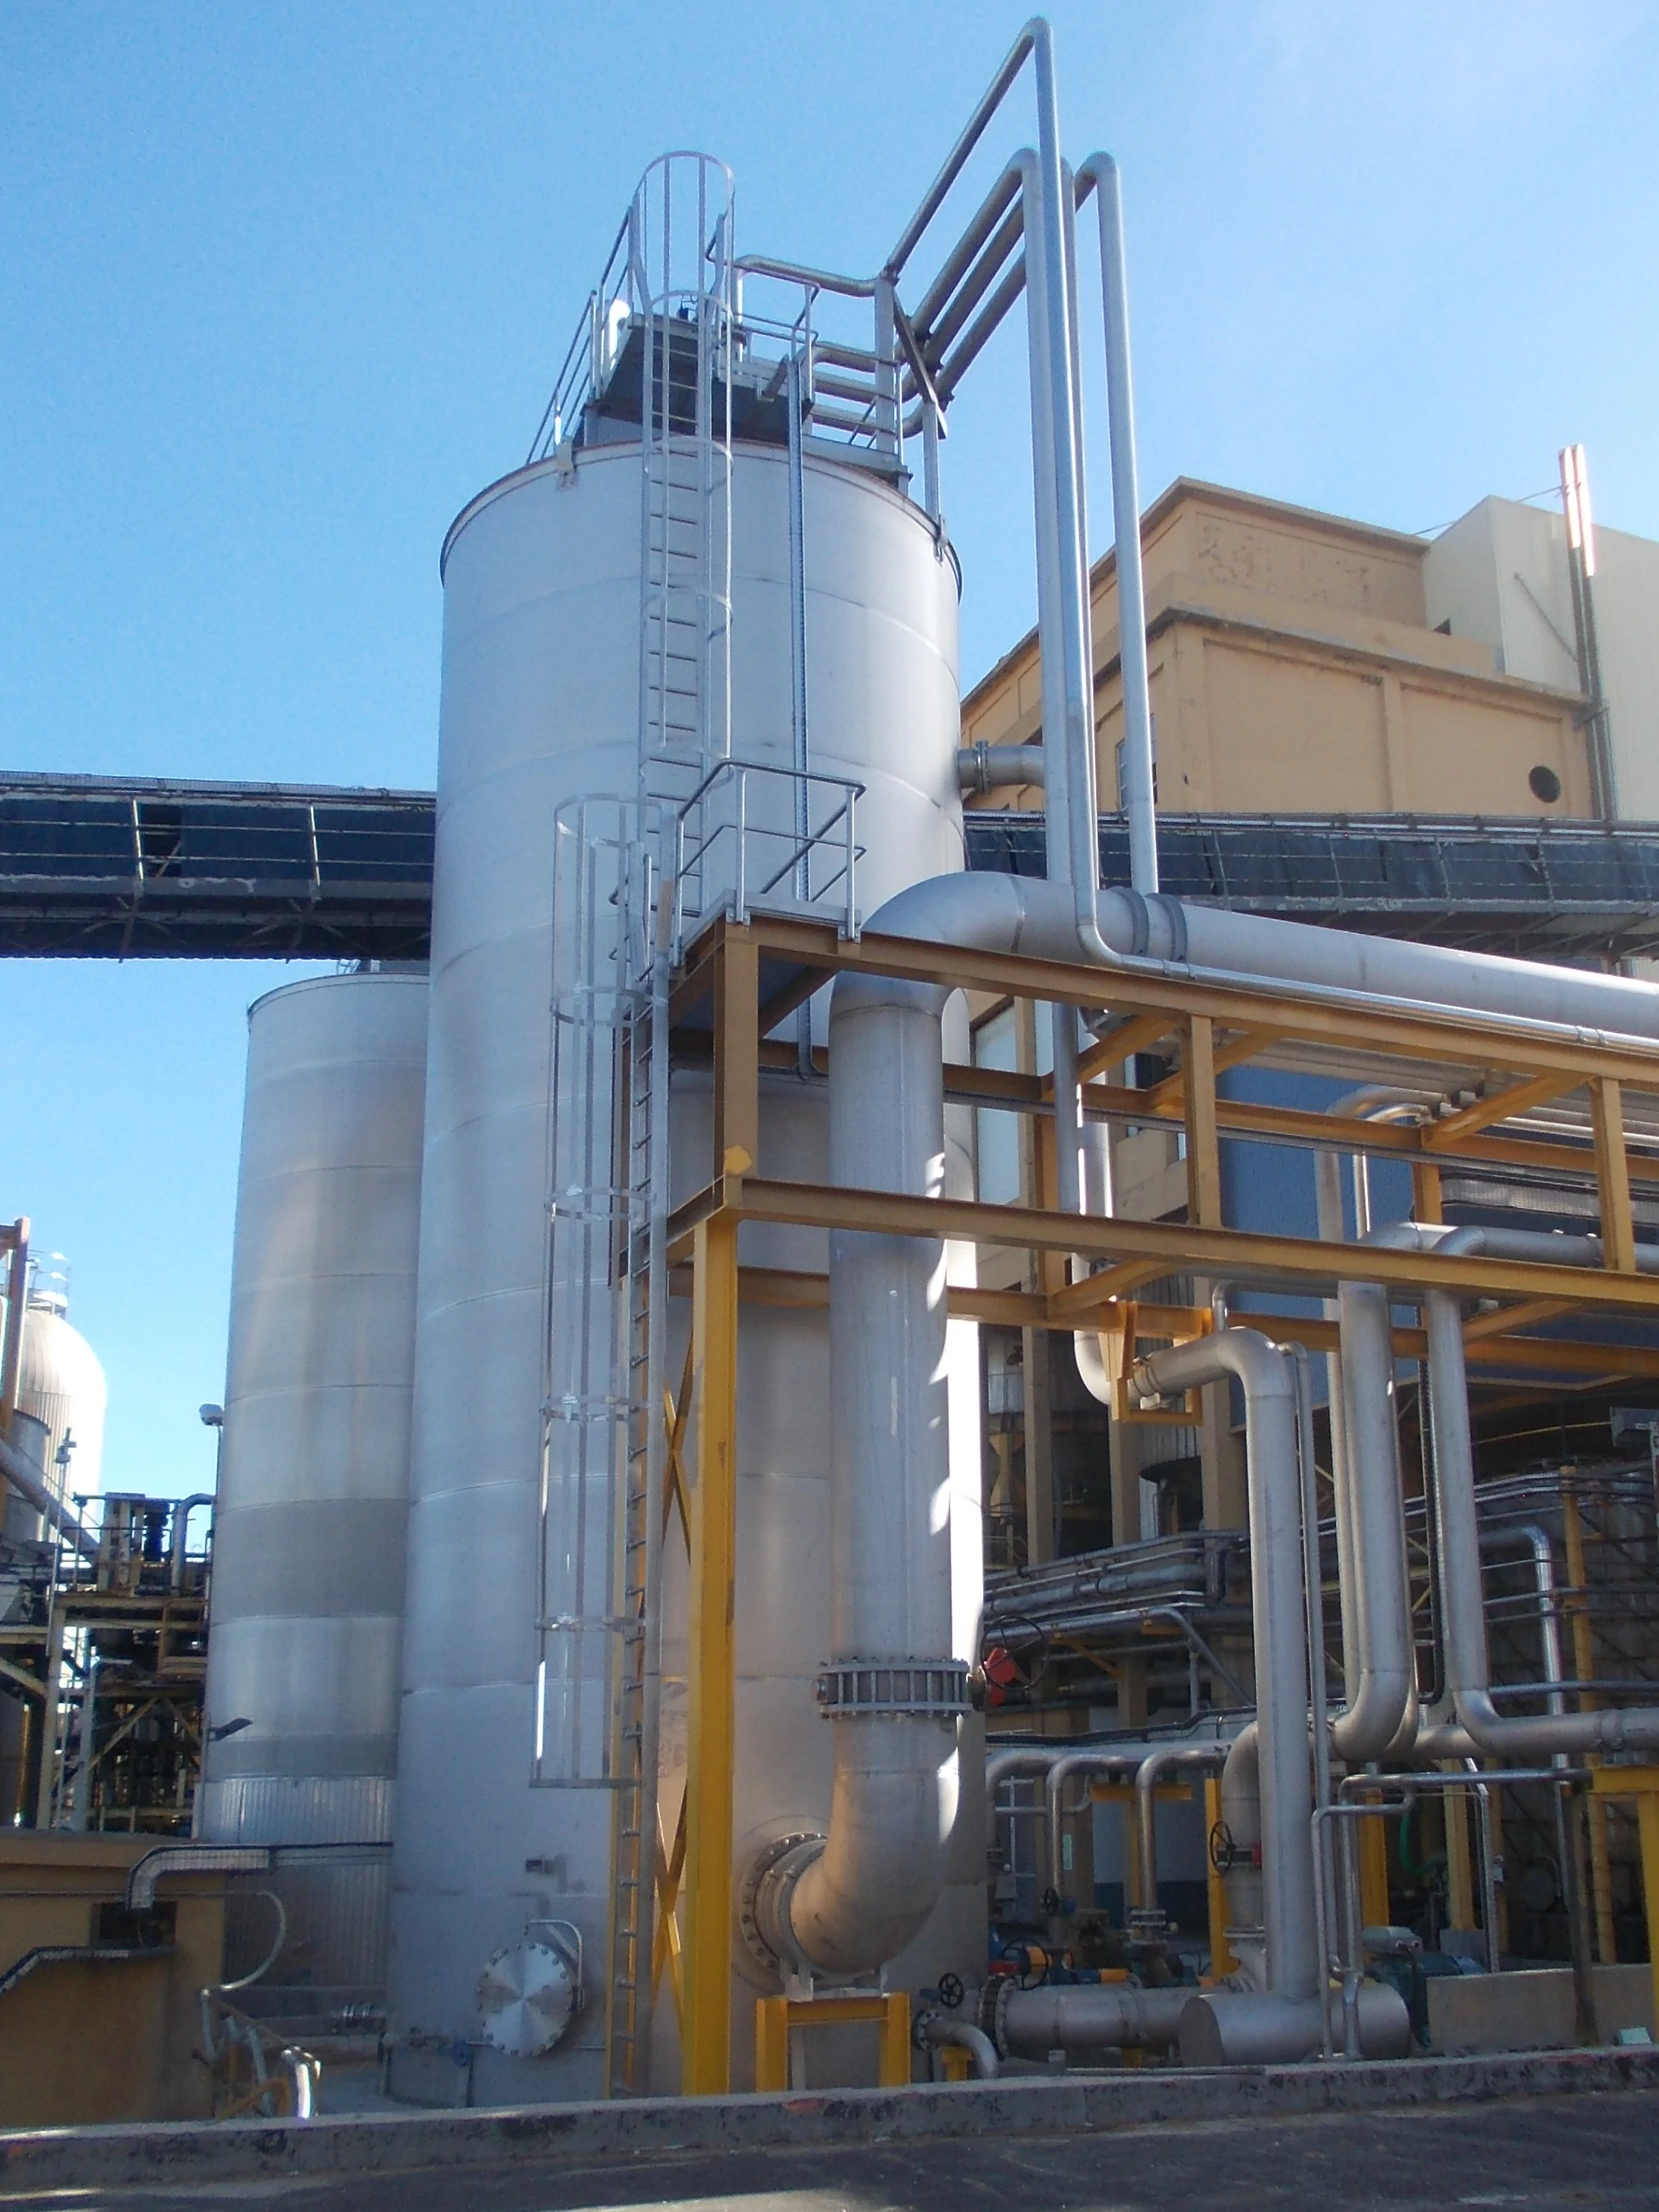 BTL Storage tanks in stainless steel - Chemical Industry